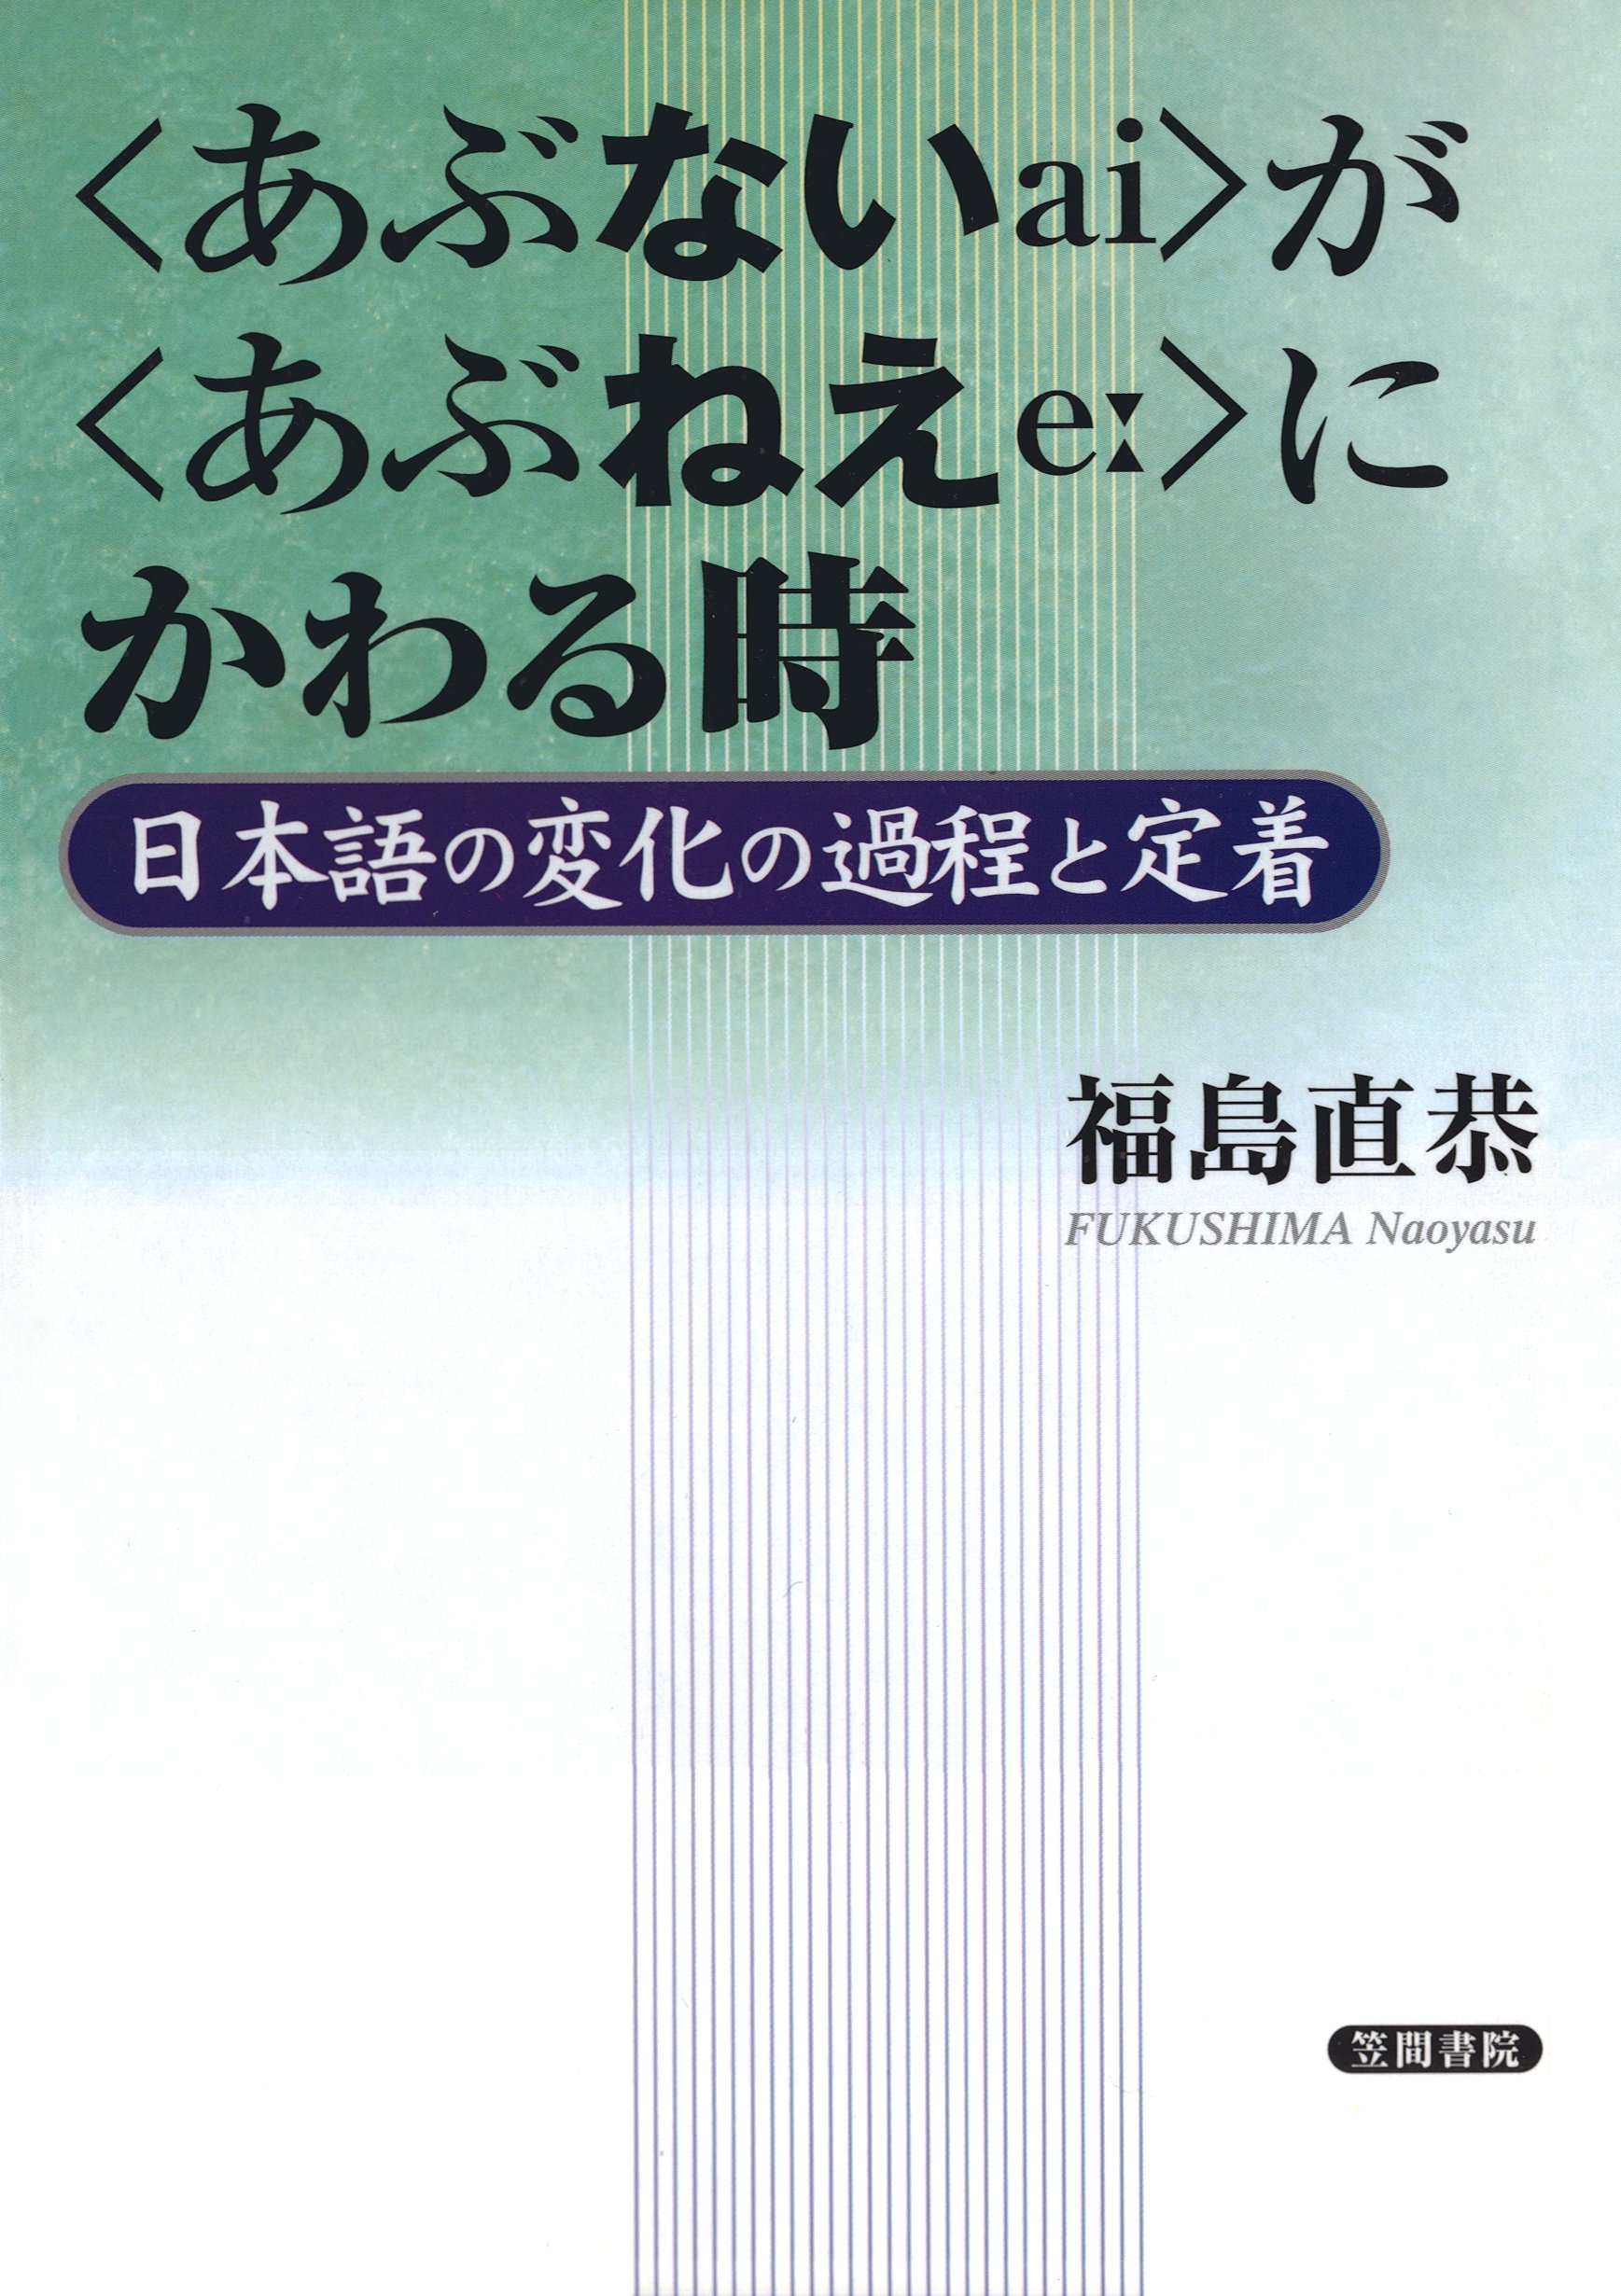 あぶない〉が〈あぶねえ〉にかわる時 日本語の変化の過程と定着 - 福島直恭 - ビジネス・実用書・無料試し読みなら、電子書籍・コミックストア  ブックライブ